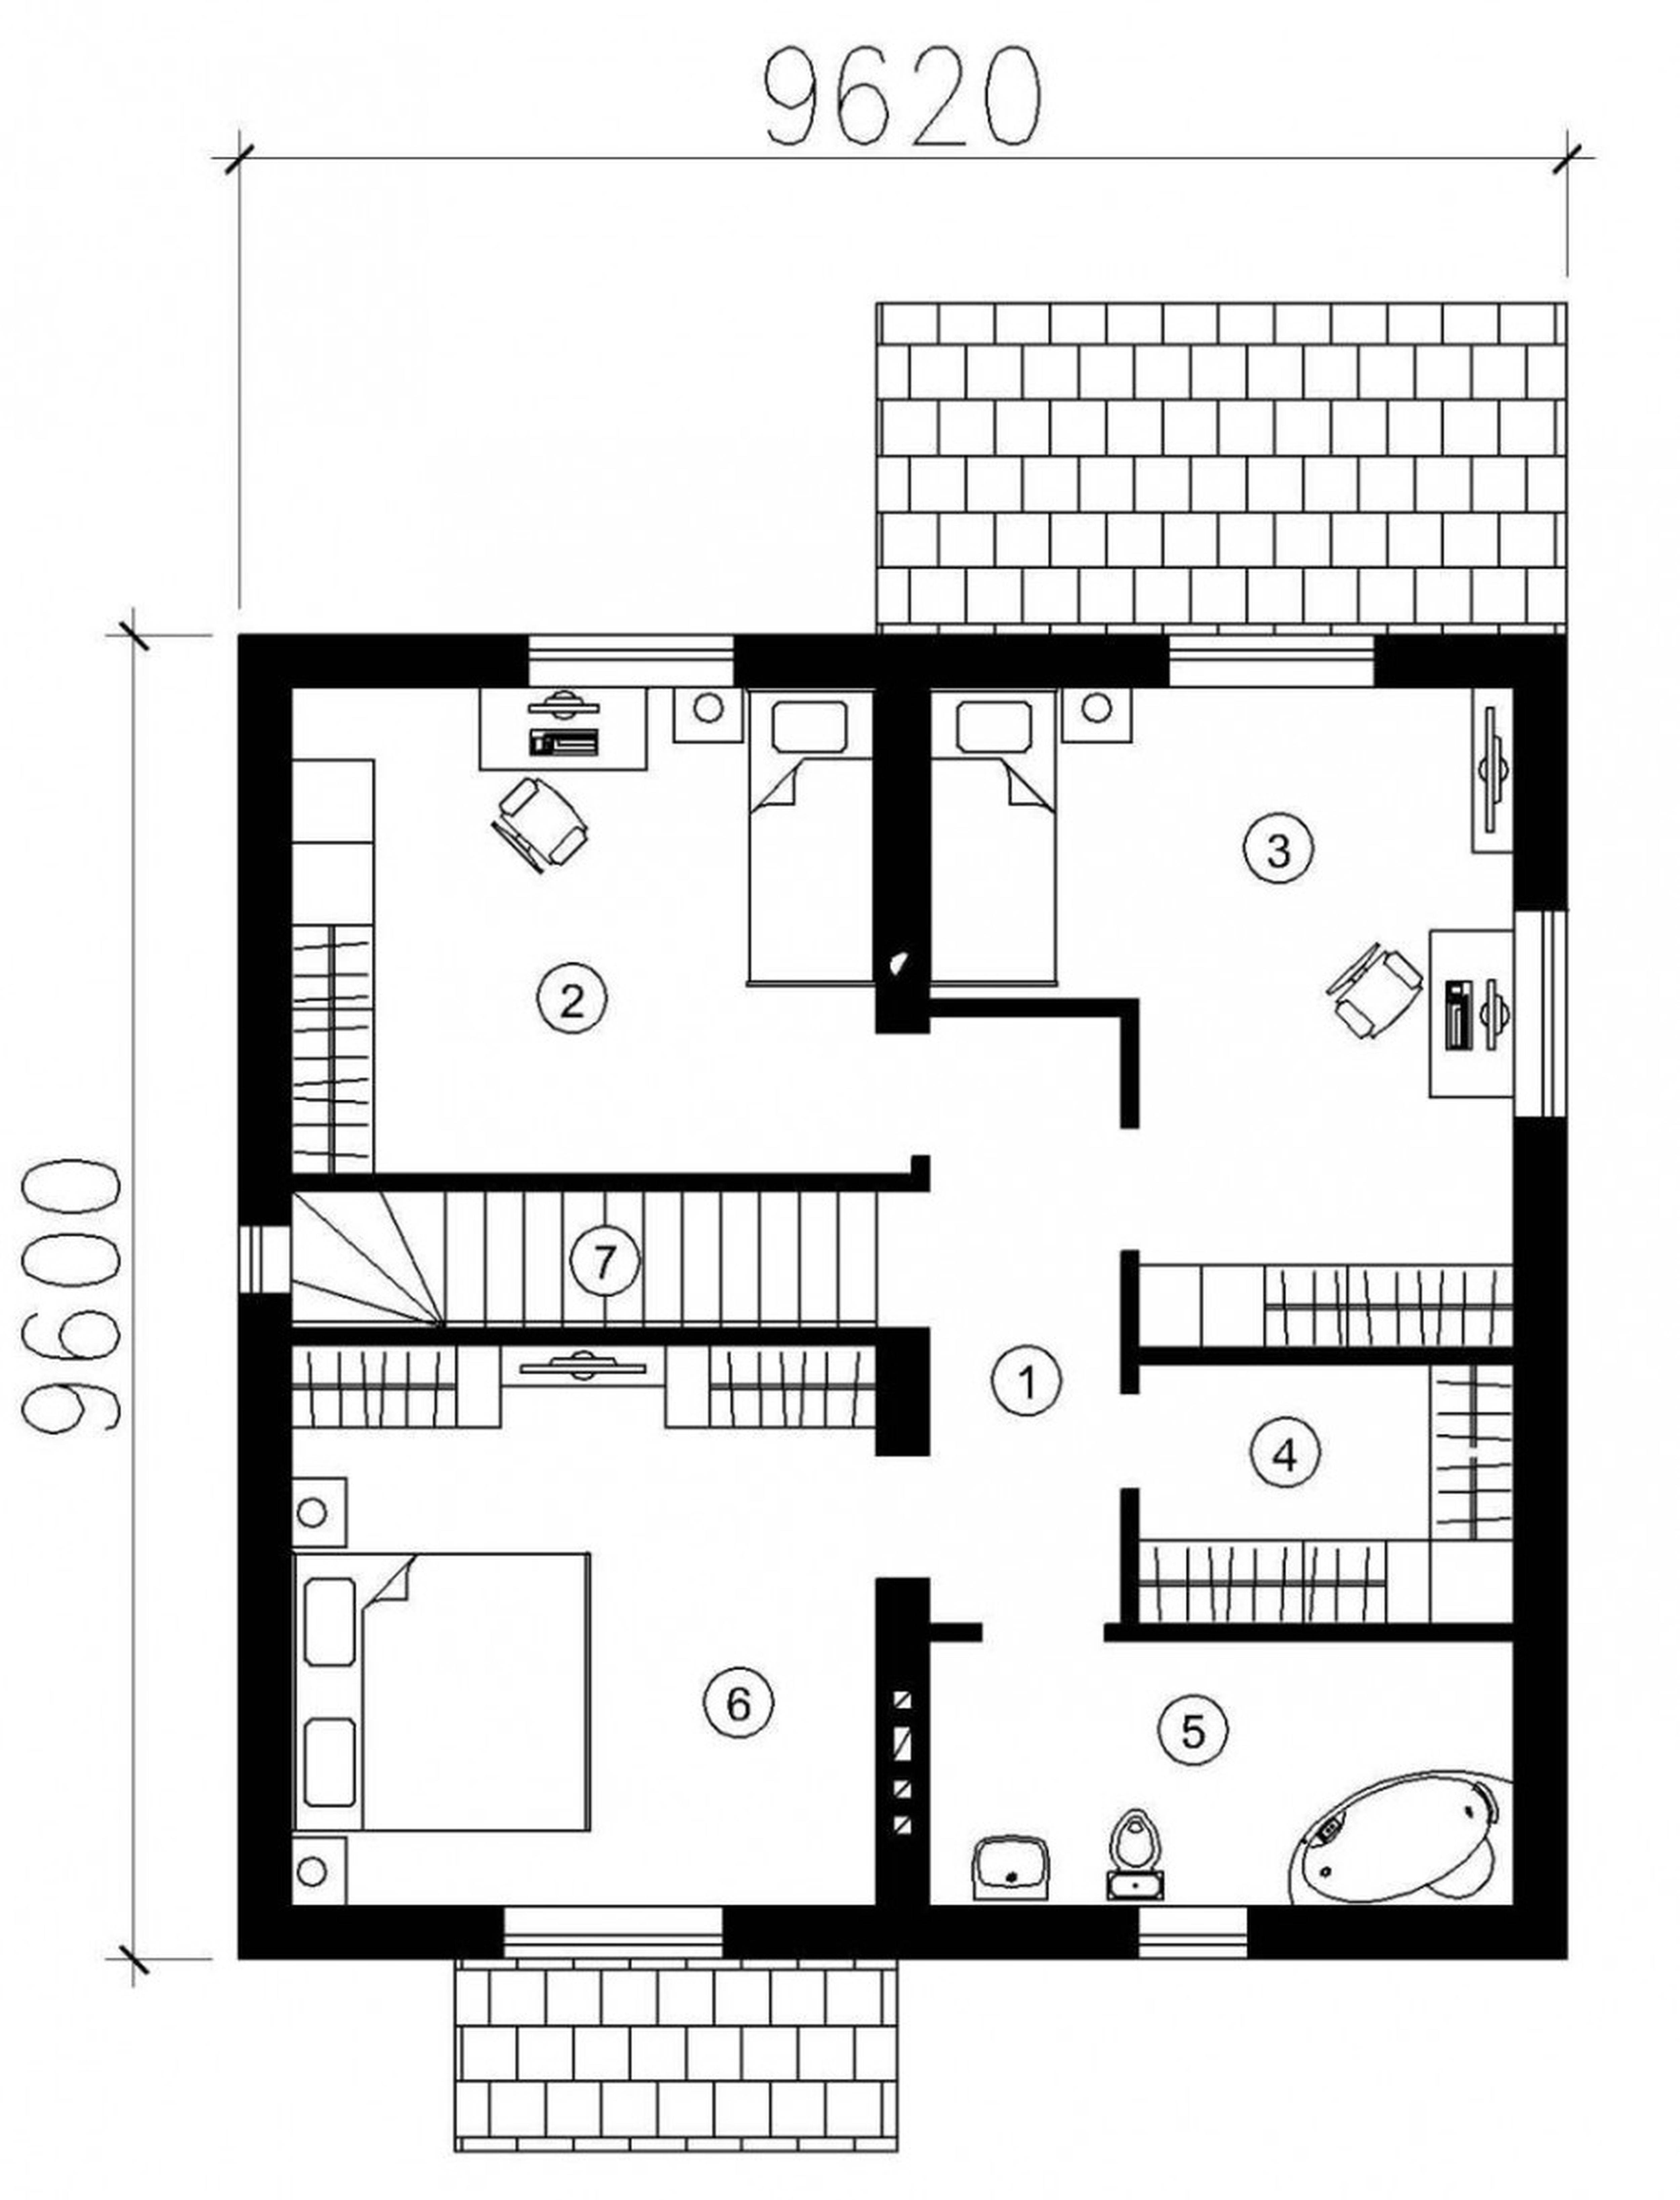 Дом 4 комнаты 2 этажа. Планировка коттеджа. Проекты прямоугольных домов. Планировки квадратных домов. План расположения комнат.